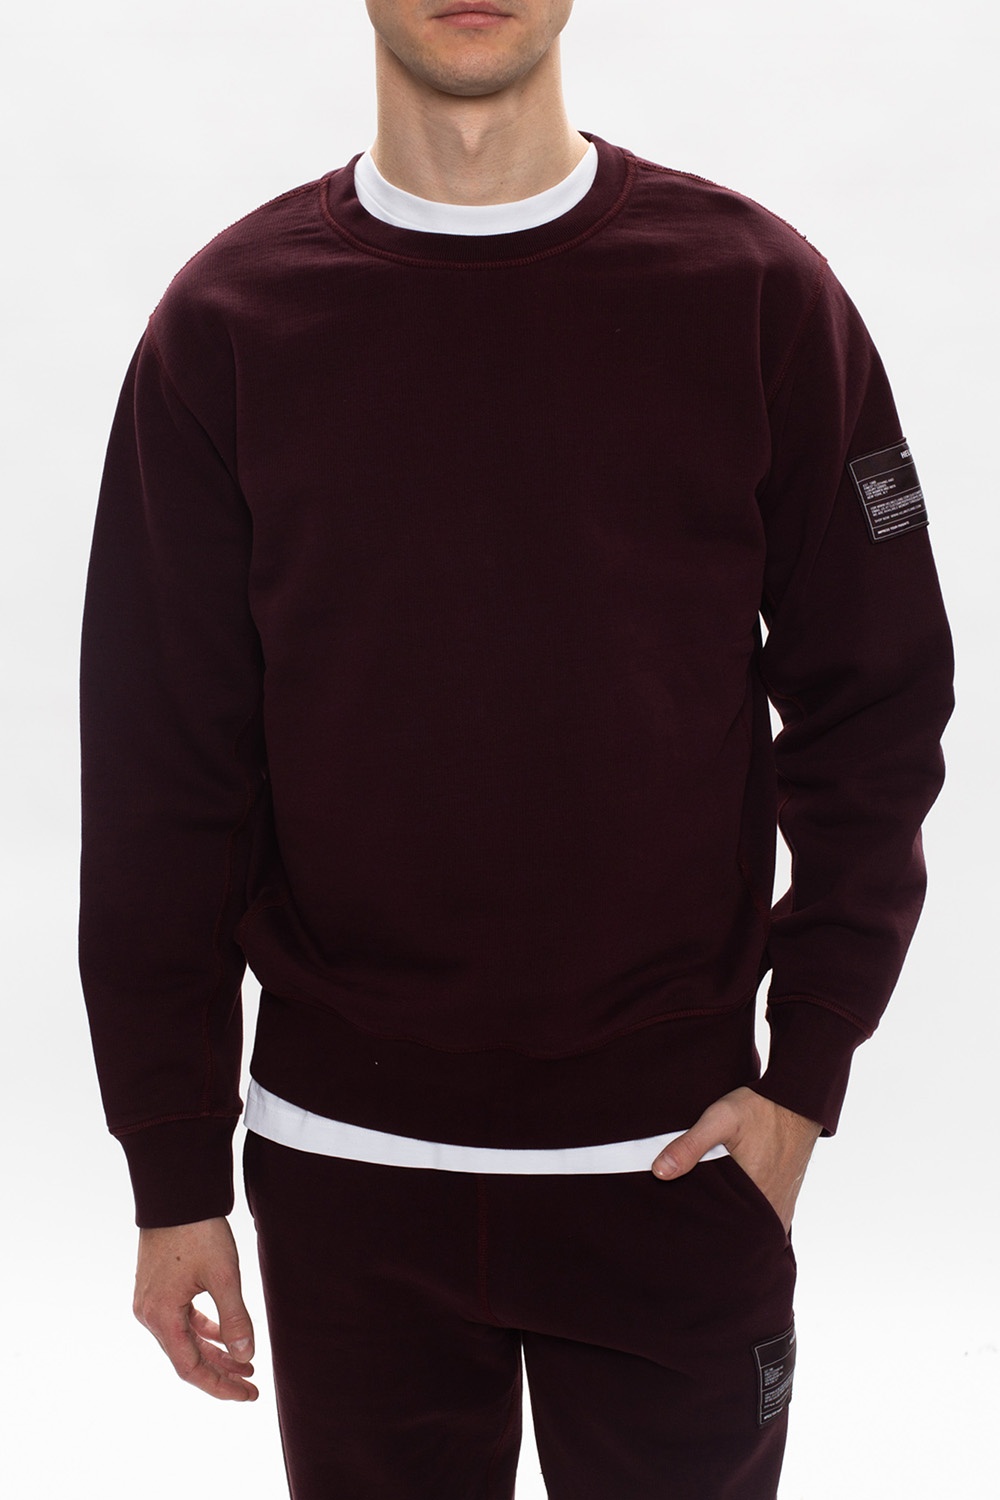 Helmut Lang Branded sweatshirt